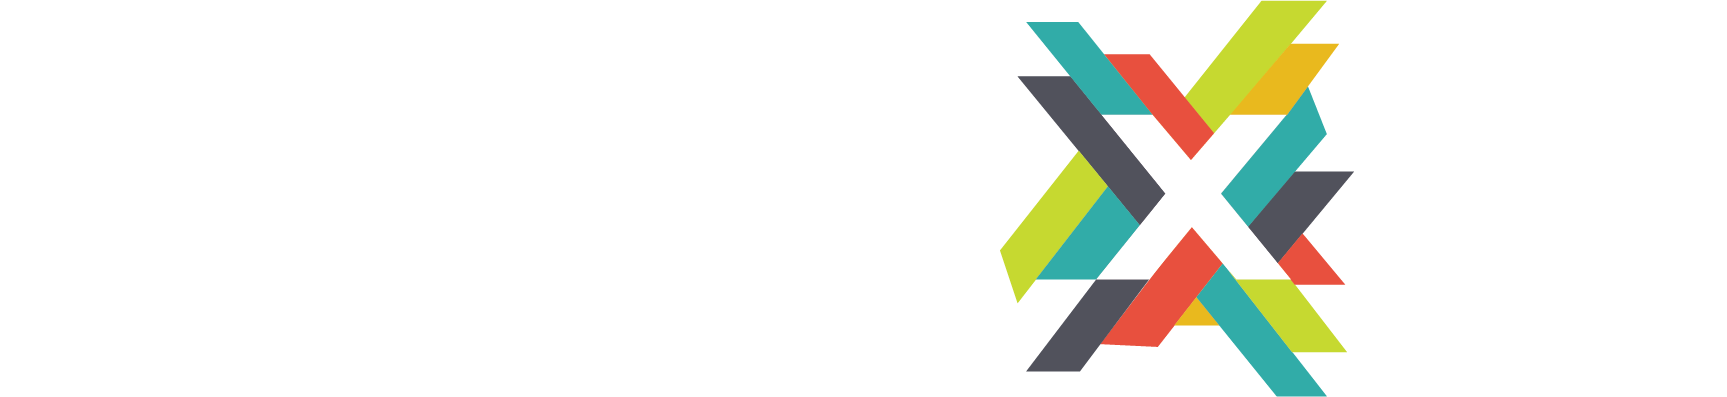 MobileXCo Vector Logo - White and coloured X - no white space